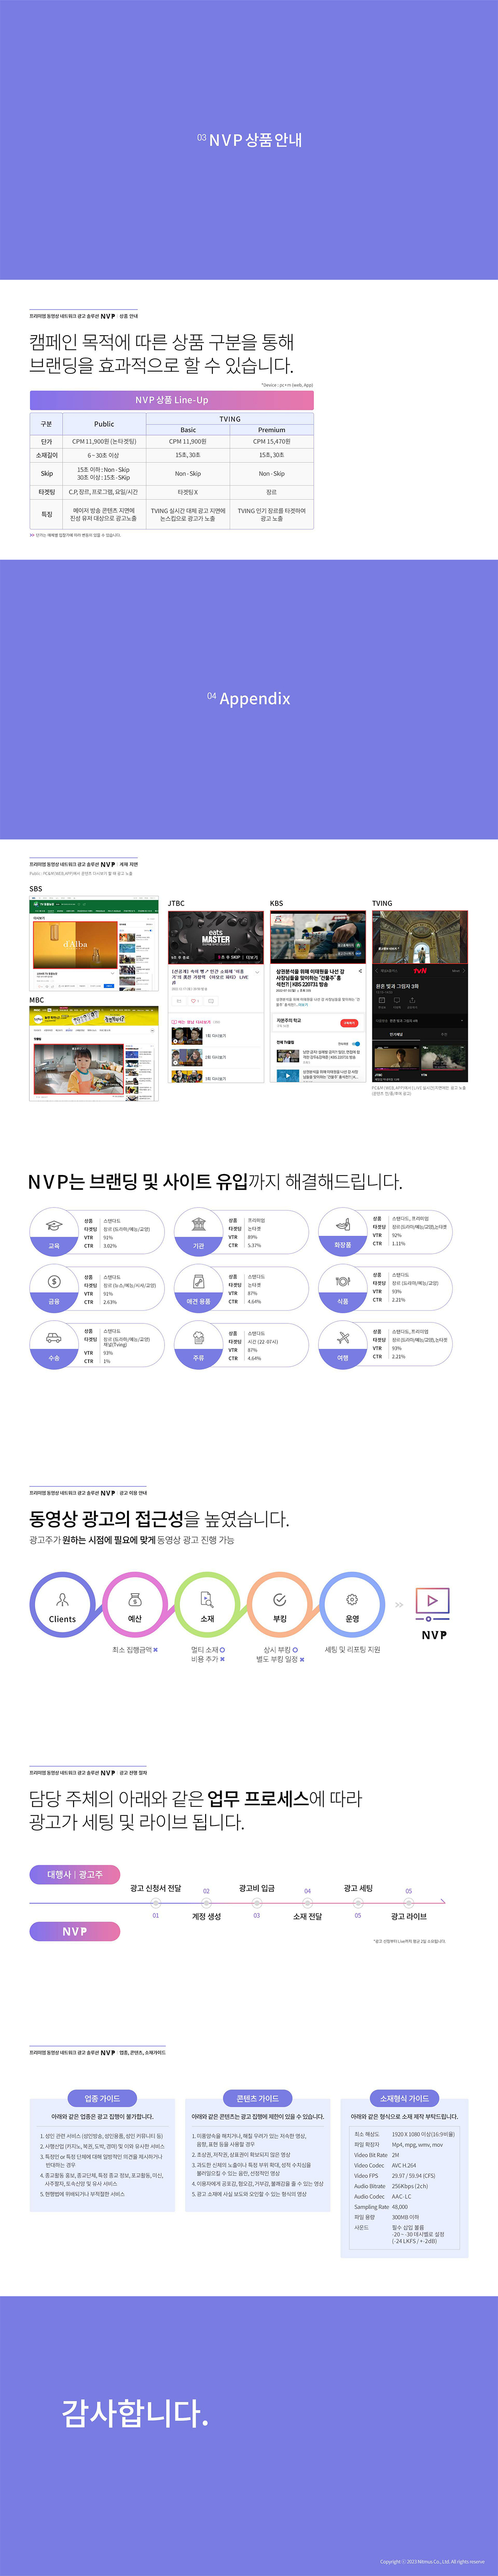 NVP 광고 상품 소개 위픽업